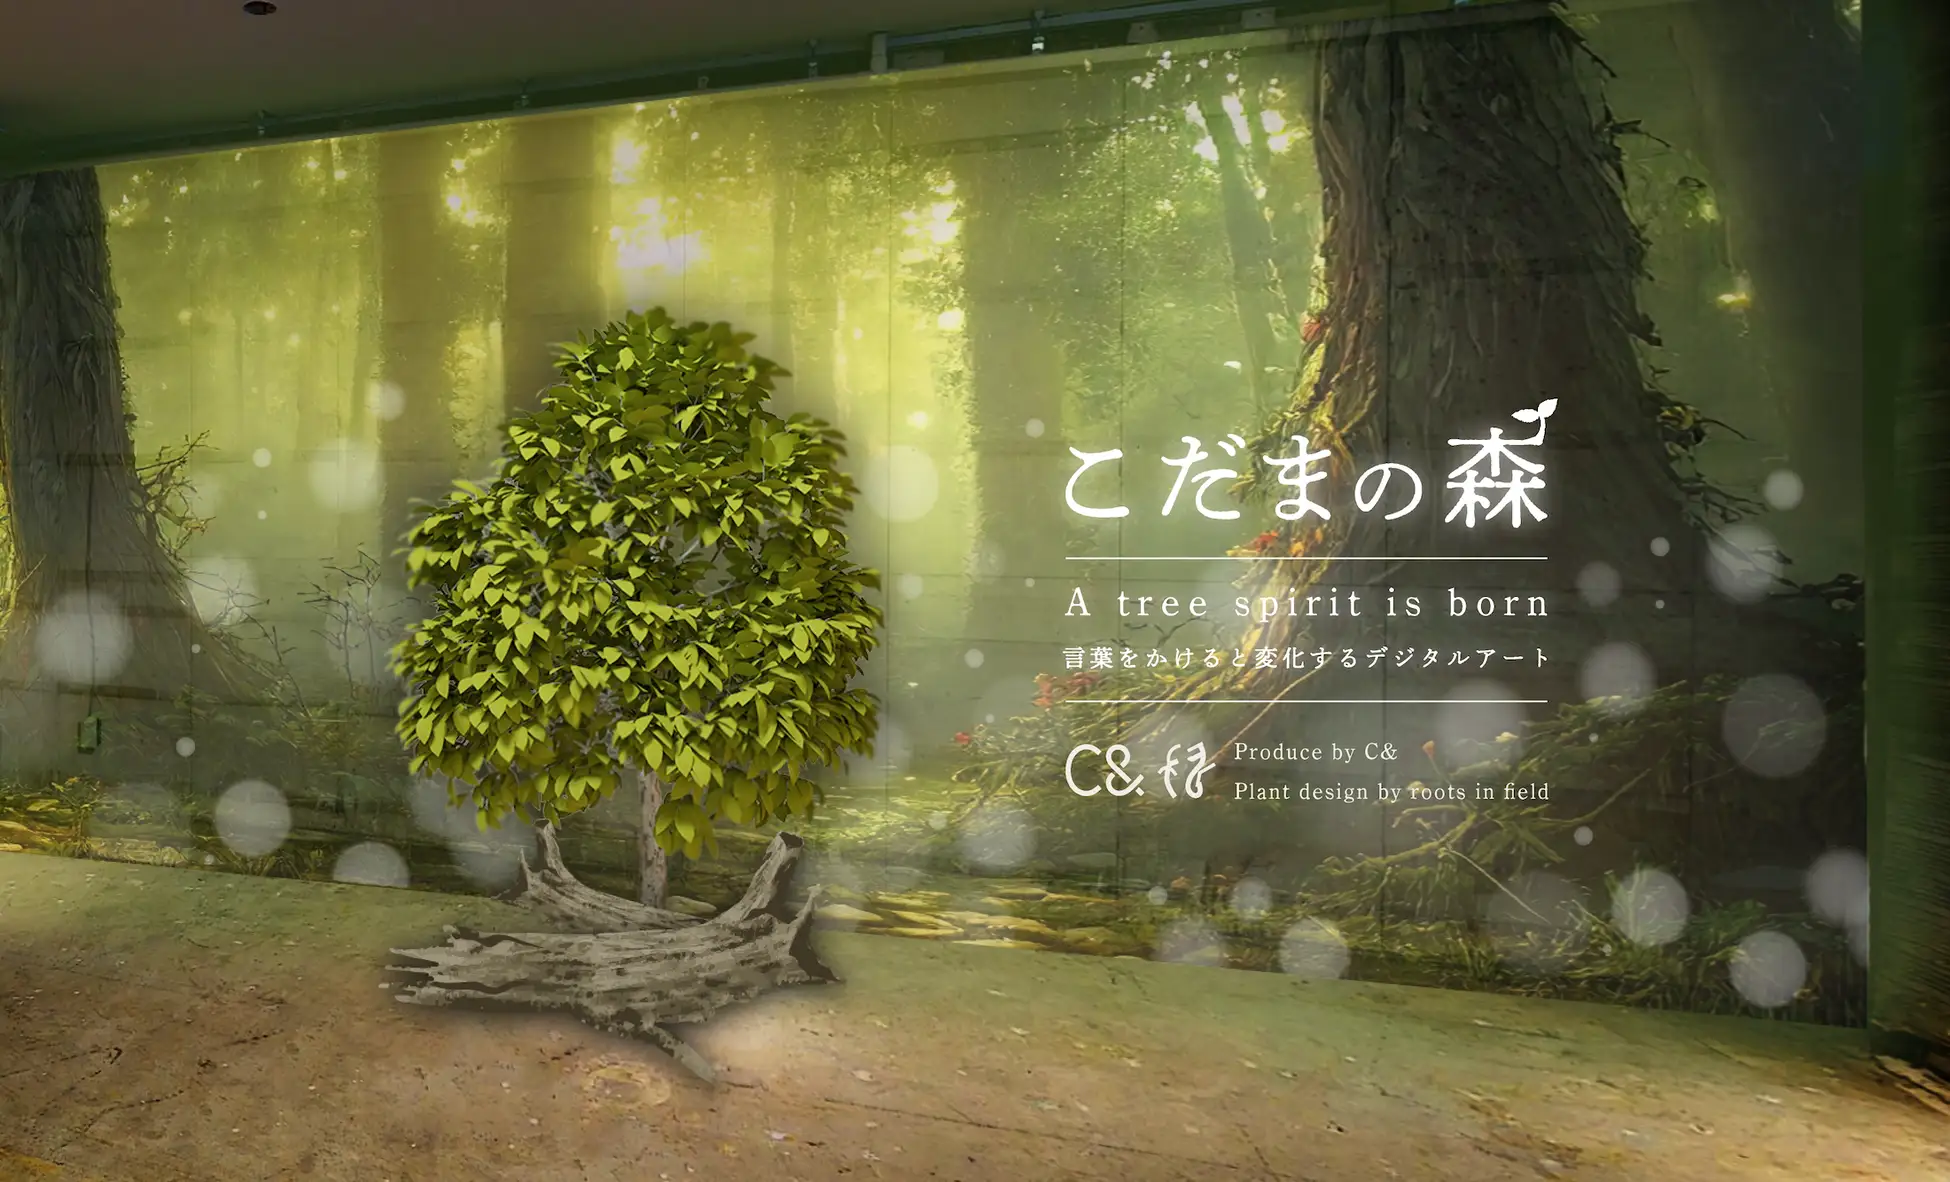 こだまの森 – 言葉をかけると変化するデジタルアートを公開